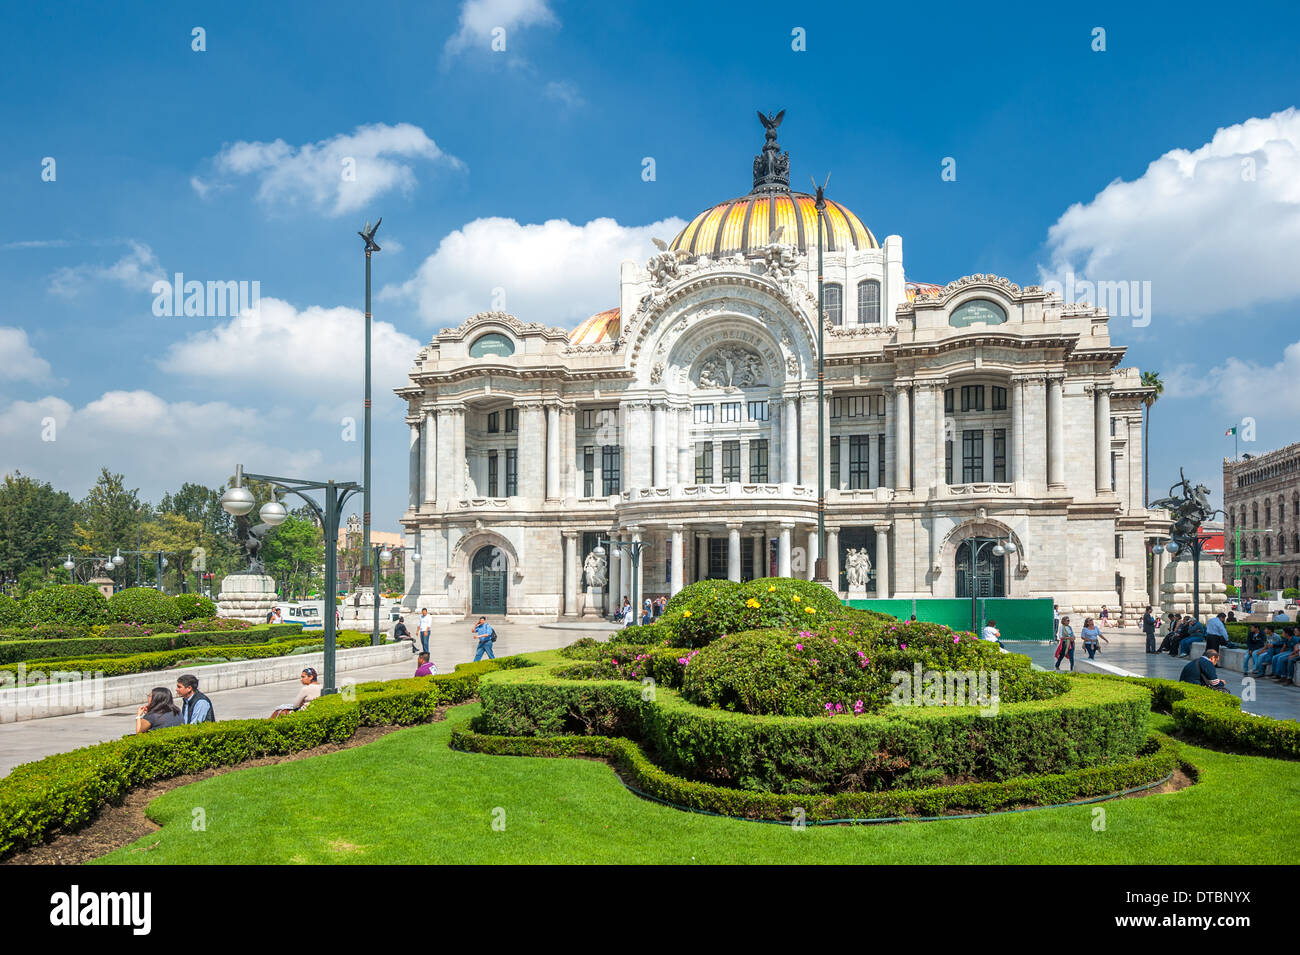 Palacio de Bellas Artes, Mexico city Stock Photo